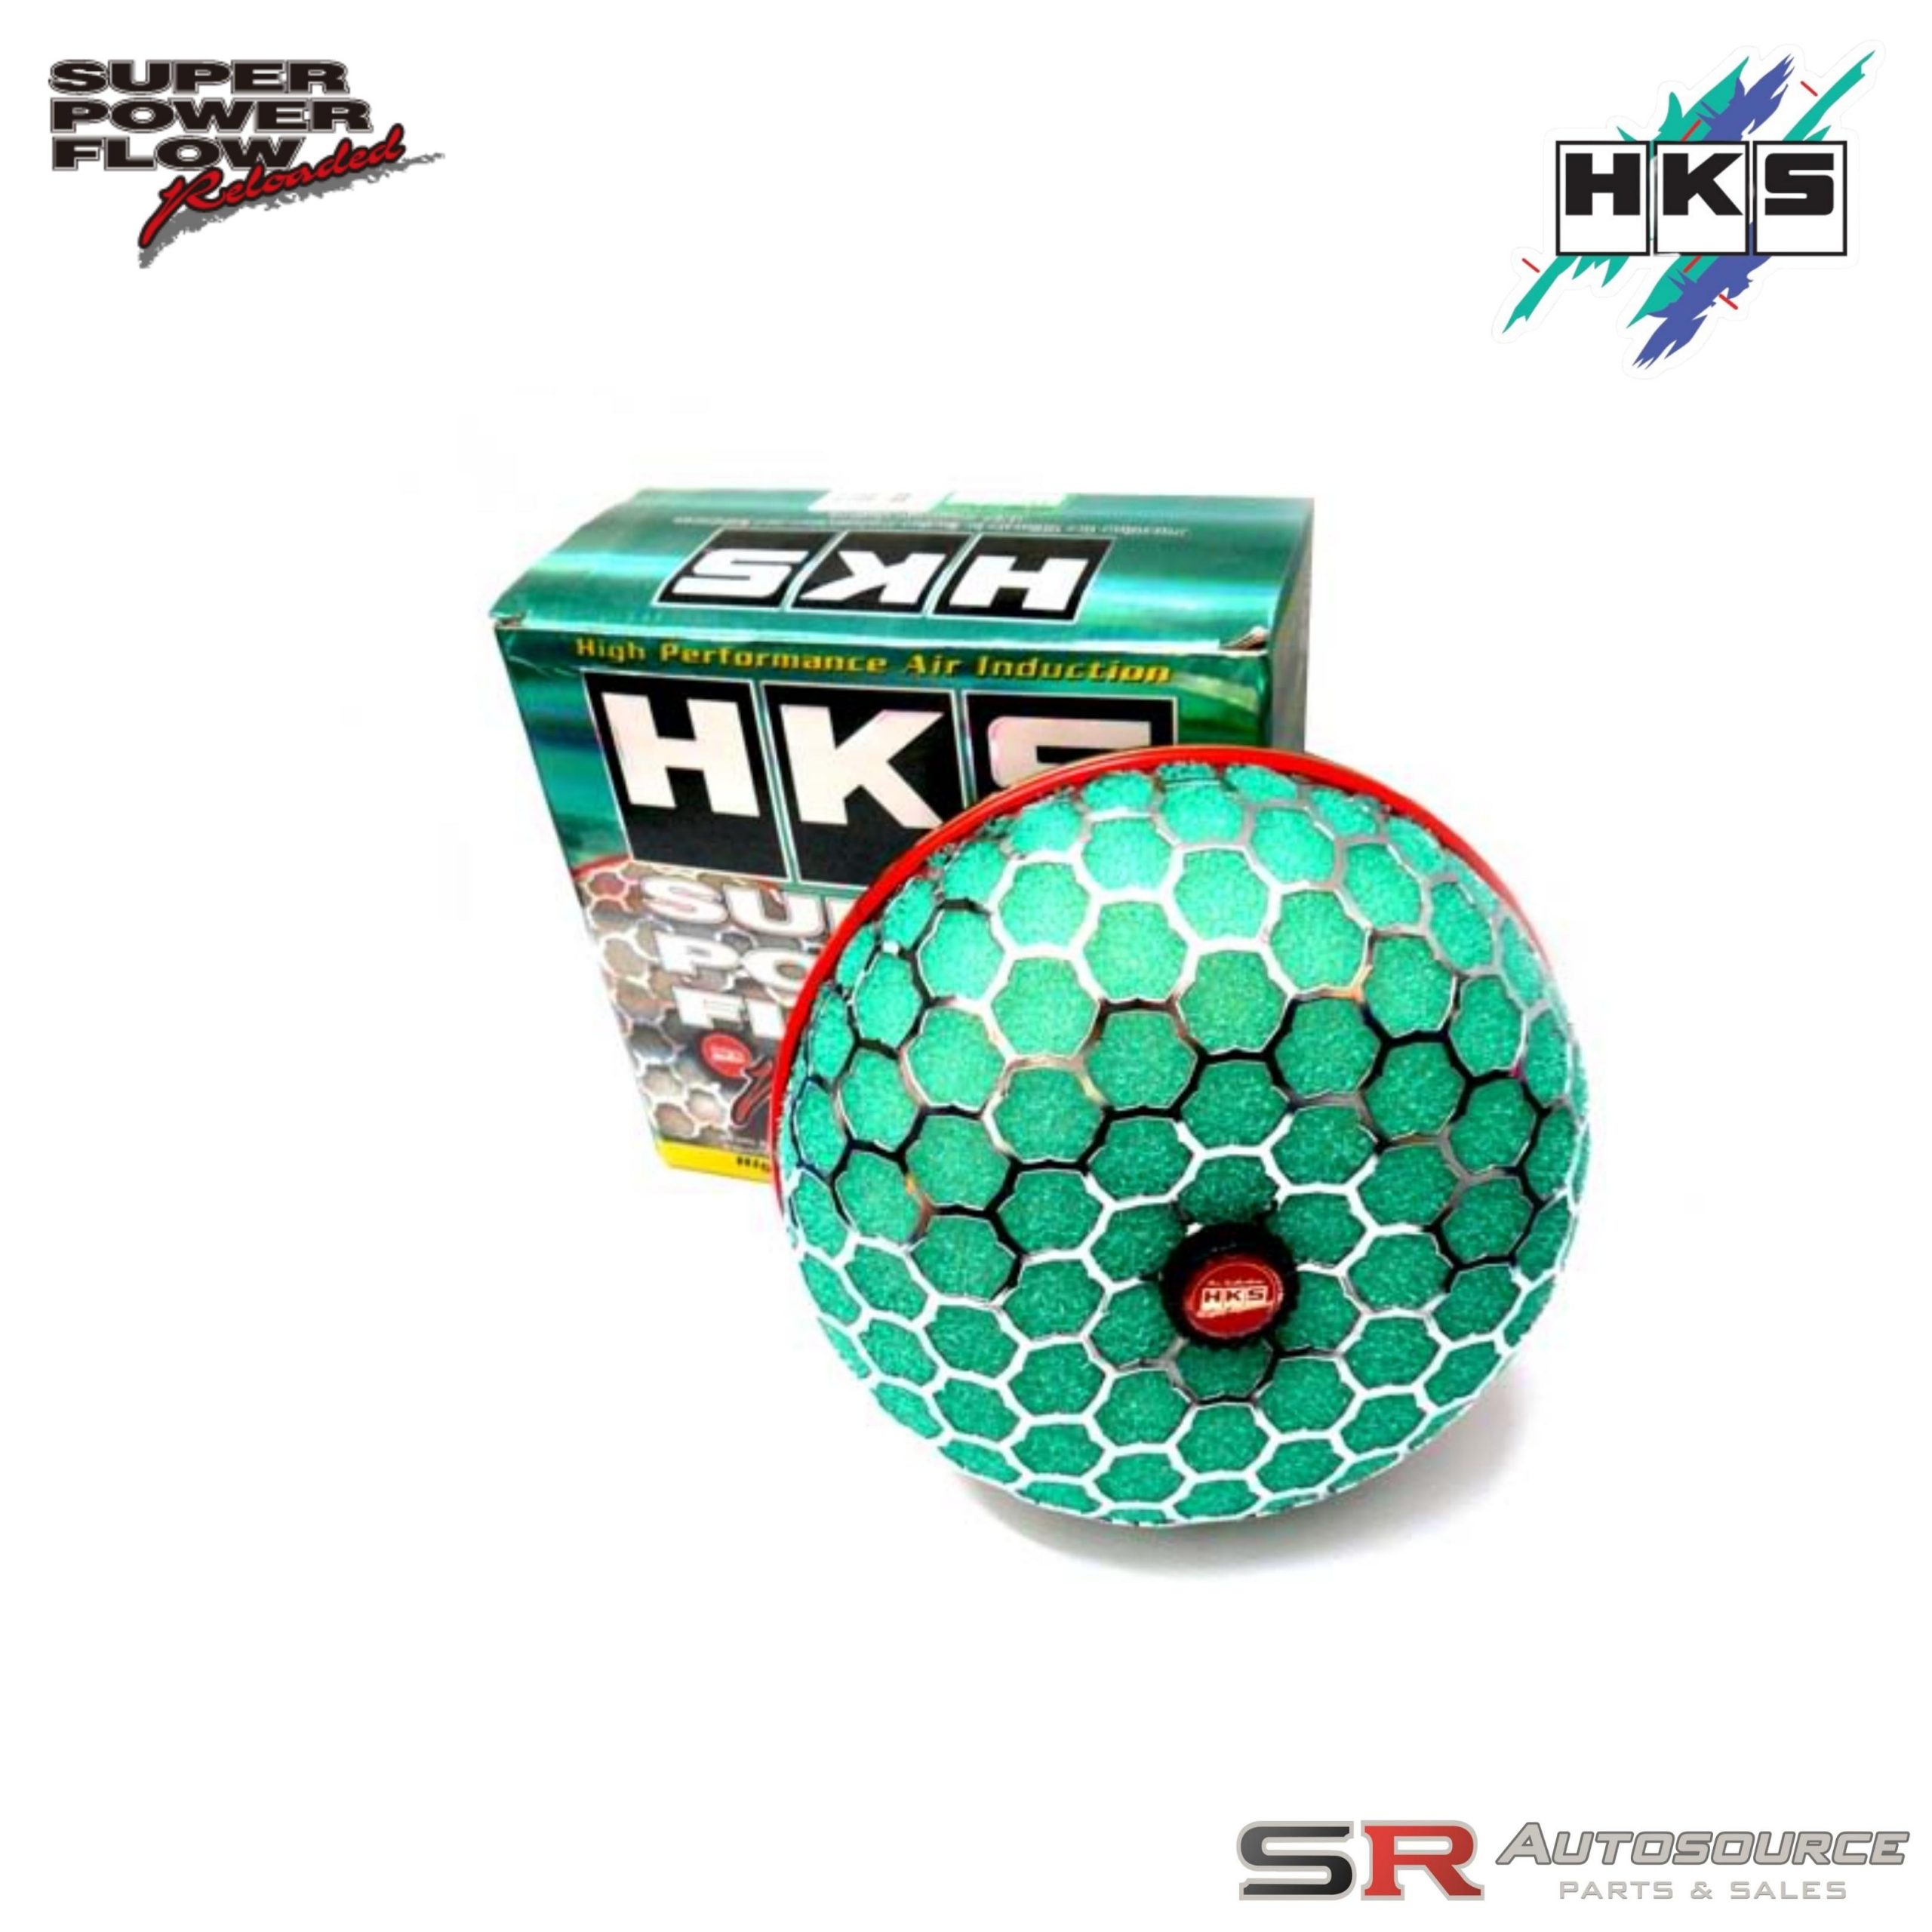 HKS SPF Reloaded Intake Kit for Skyline R33 GTR BCNR33 RB26DETT